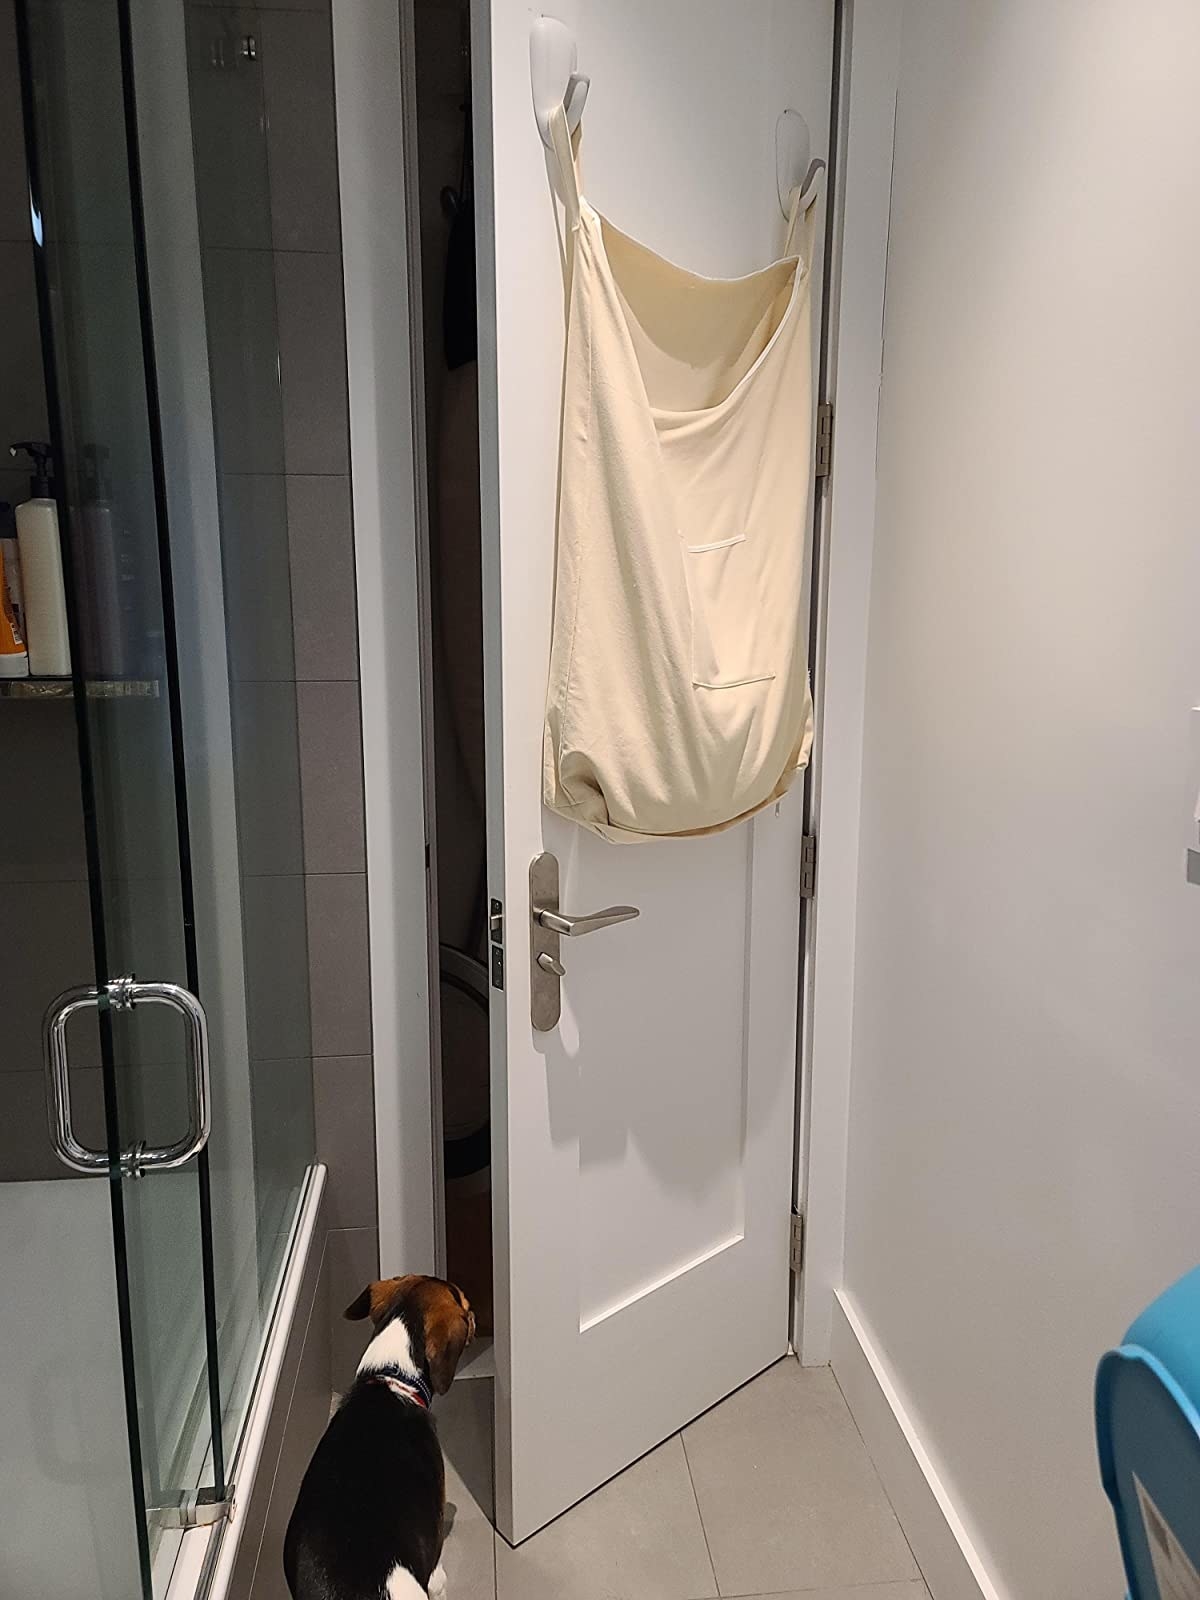 reviewer image of the wenko over-the-door laundry bag hanging behind their bathroom door